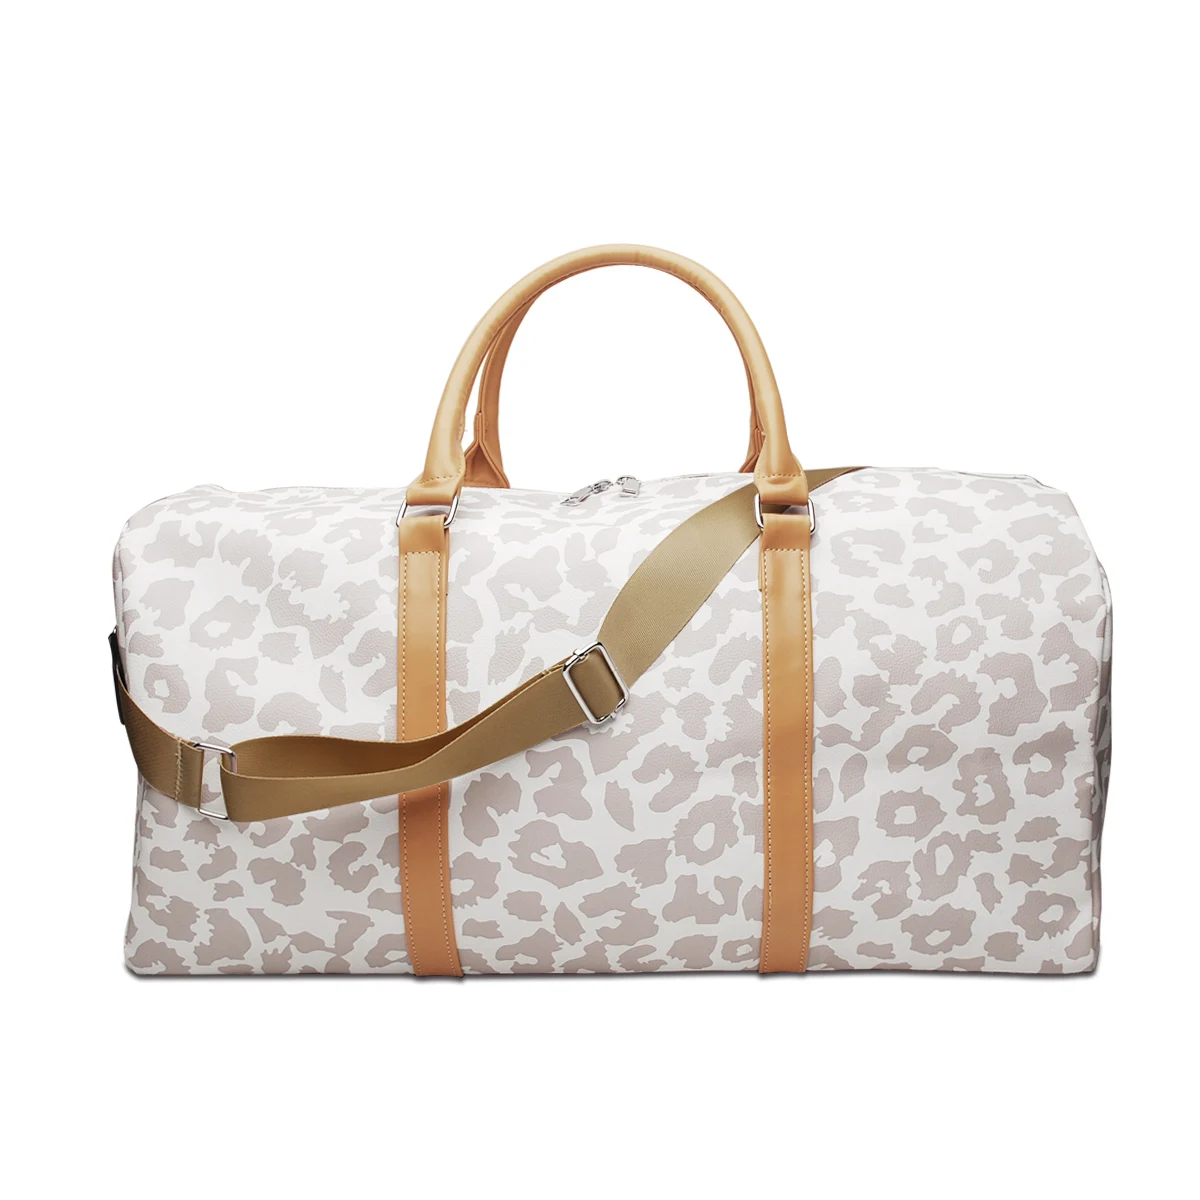 

Domil Leopard Weekender Bag Travel Duffel Bag For Women Large Cheetah Tote Shoulder Bag With Shoulder Strap DOM112-1065, Black